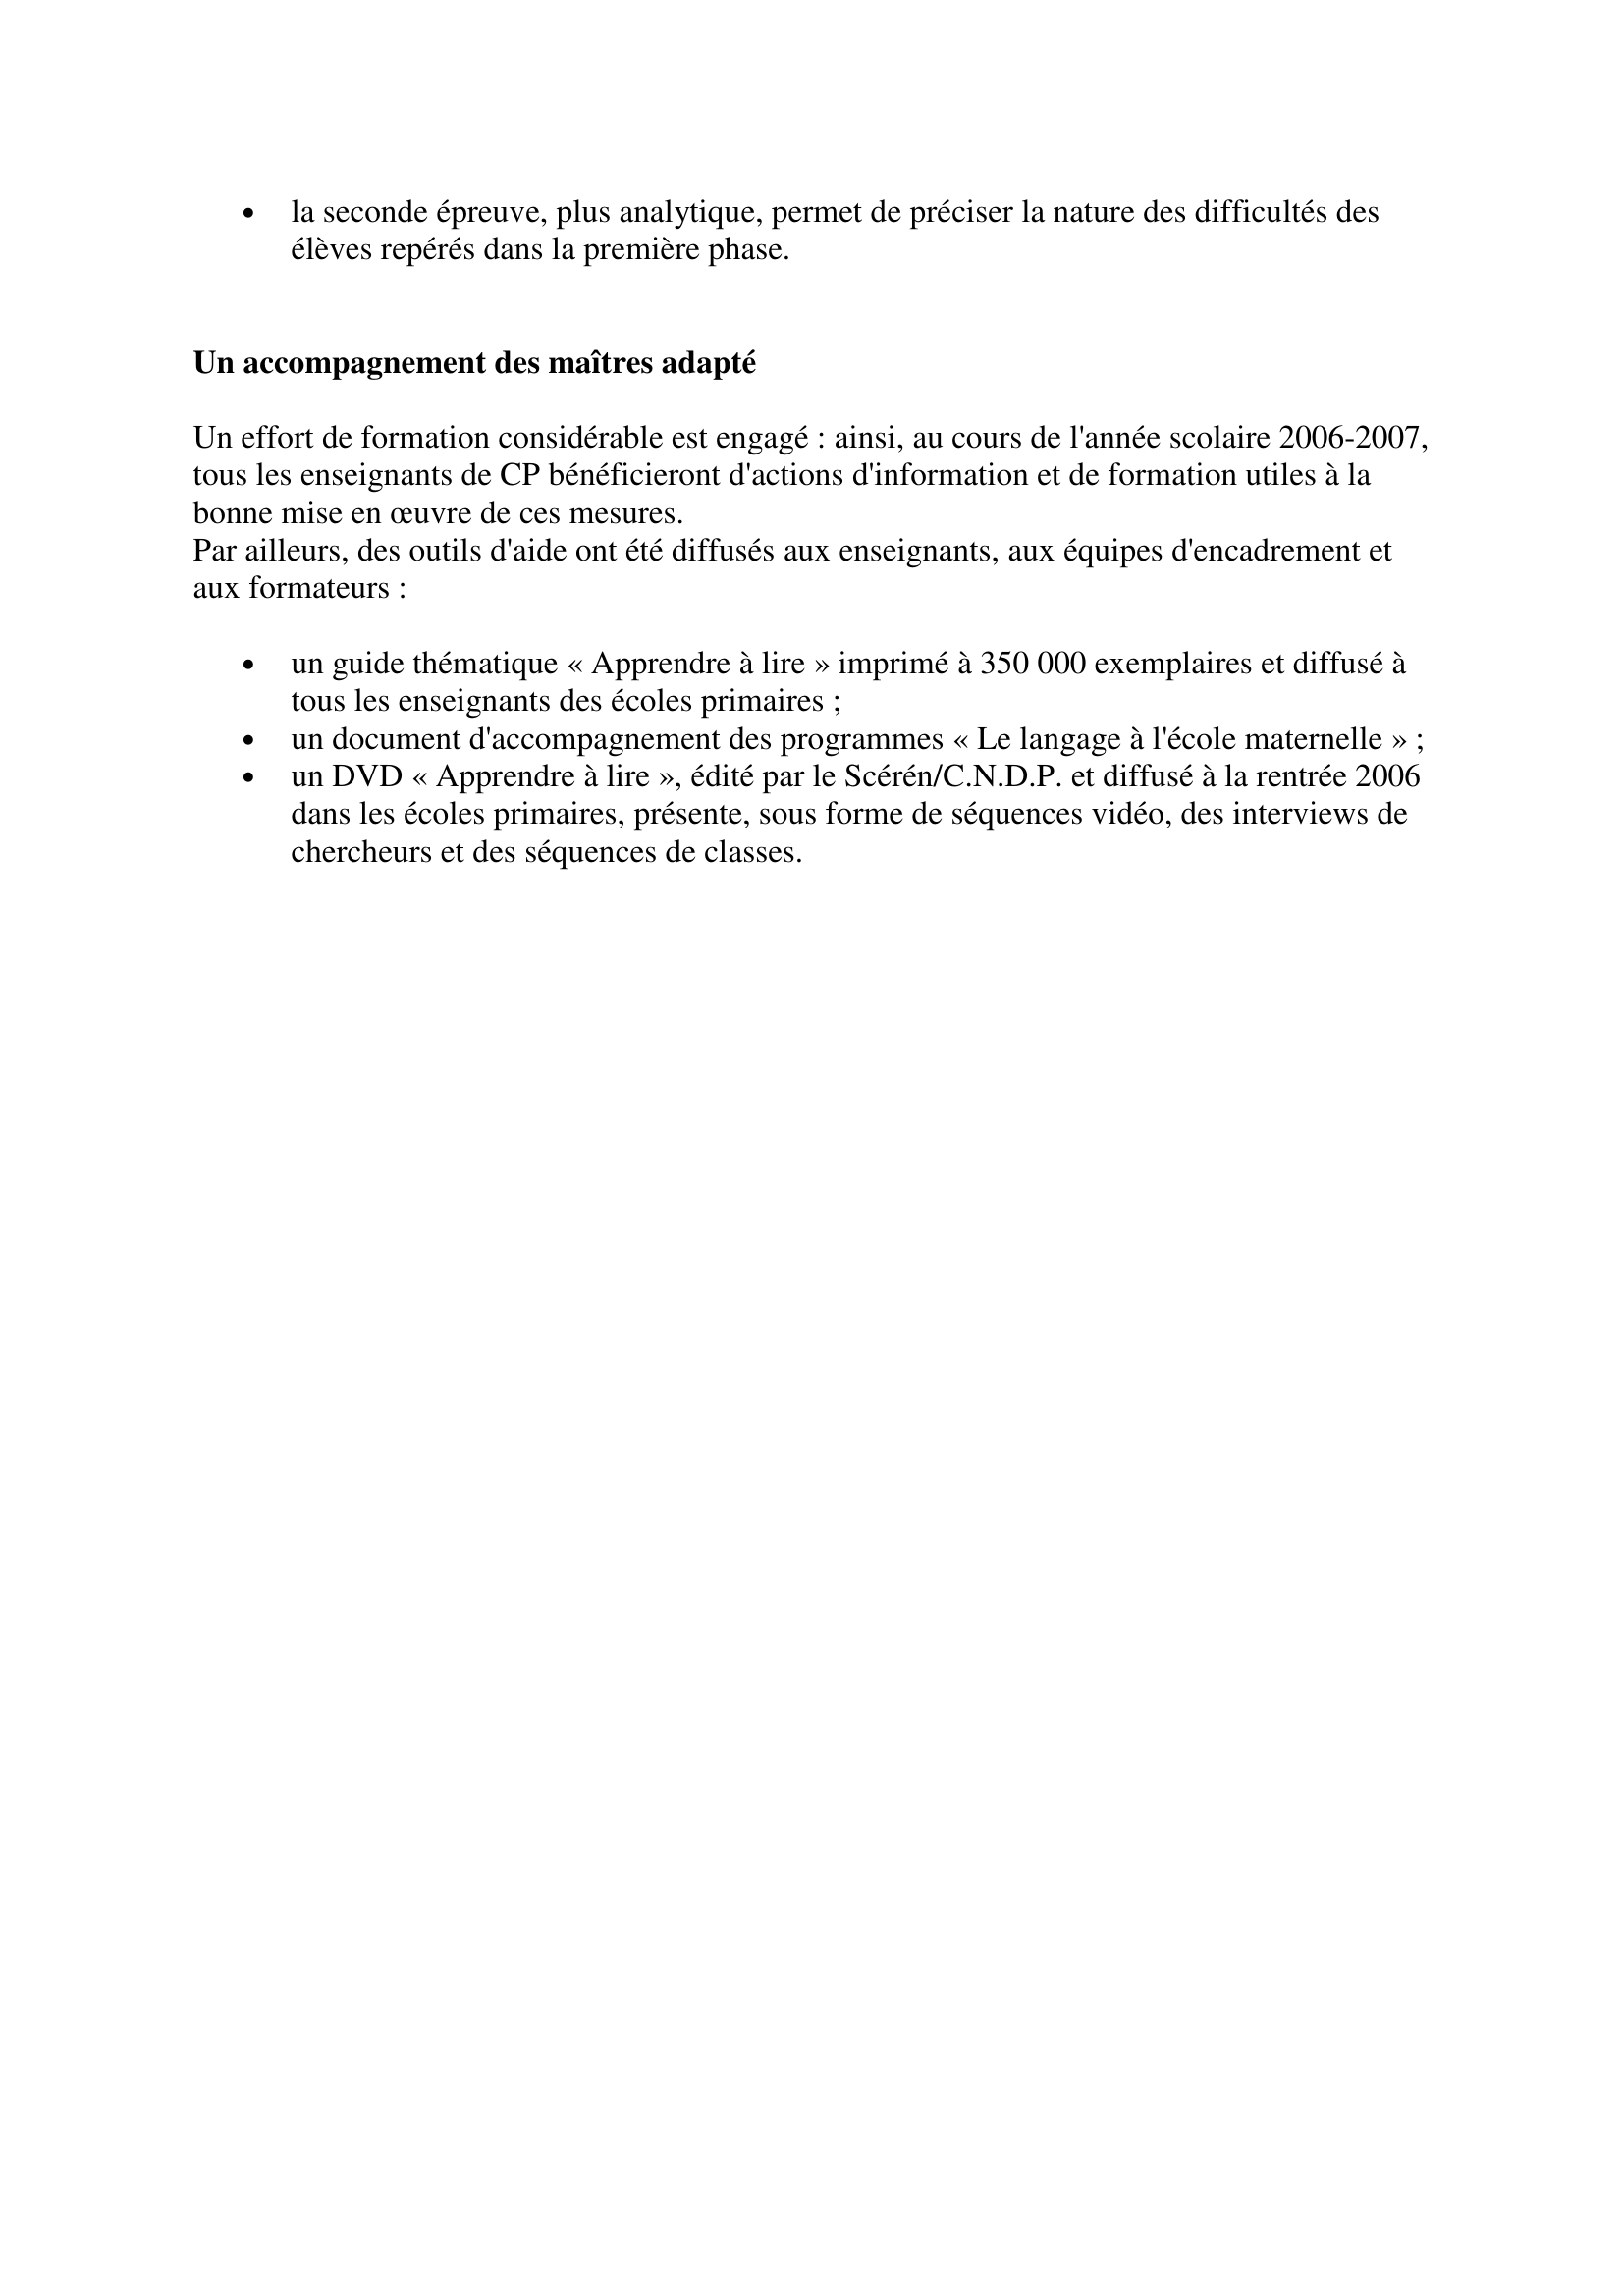 Prévisualisation du document LA MAITRISE DE LA LECTURE A L'ECOLE

Synthèse construite par Sylvain
sylvain.